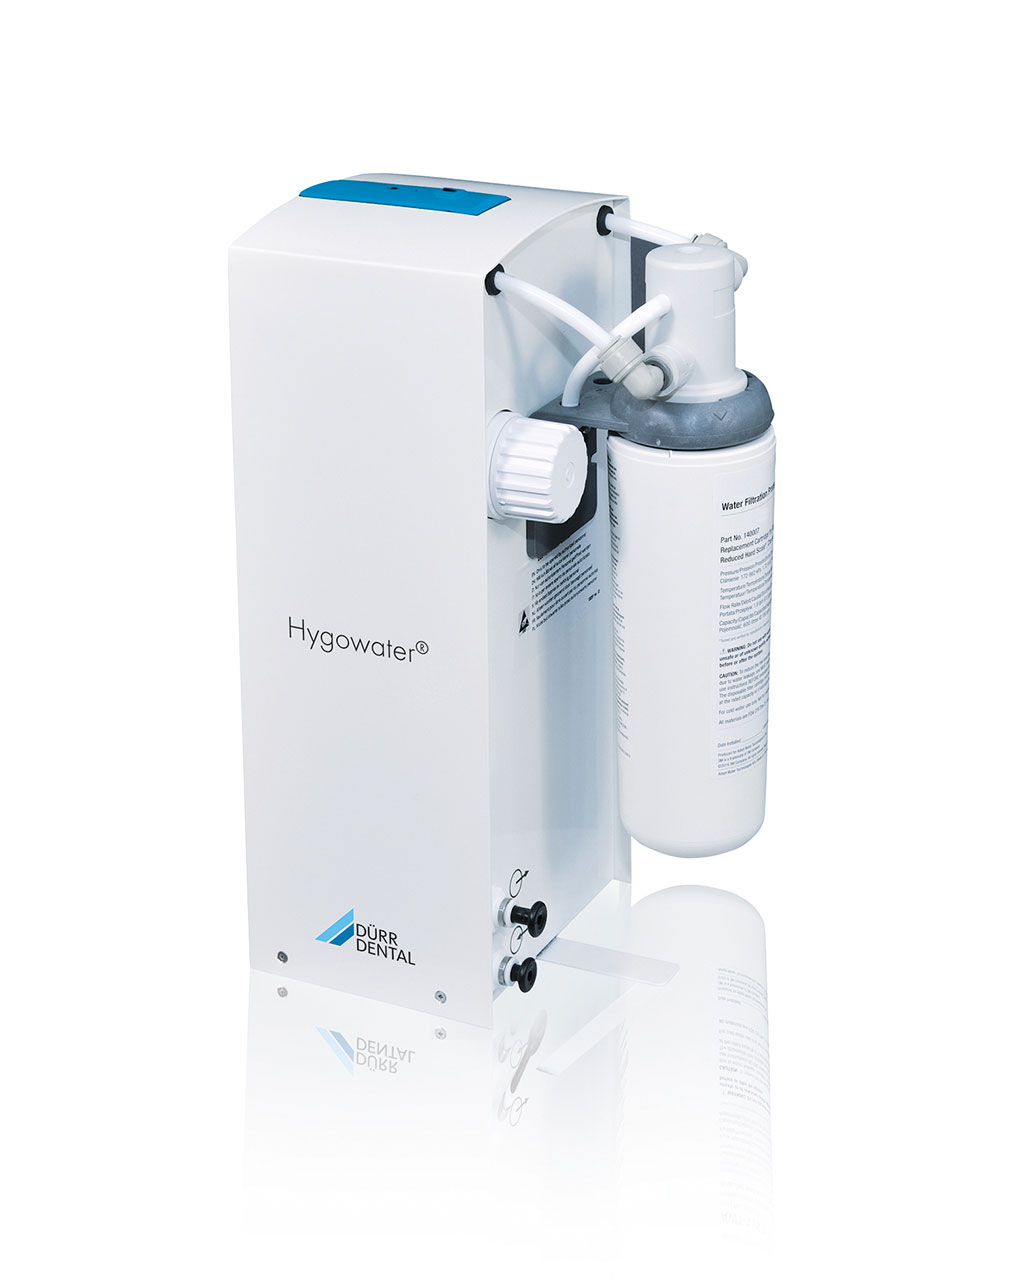 Der Hygowater Compact: wie der Hygowater eine dezentrale Variante für bis zu zwei Behandlungseinheiten, nur ohne die freie Fallstrecke nach DIN EN 1717 (d.h. der Rückfluss-Schutz wird anderweitig sichergestellt).